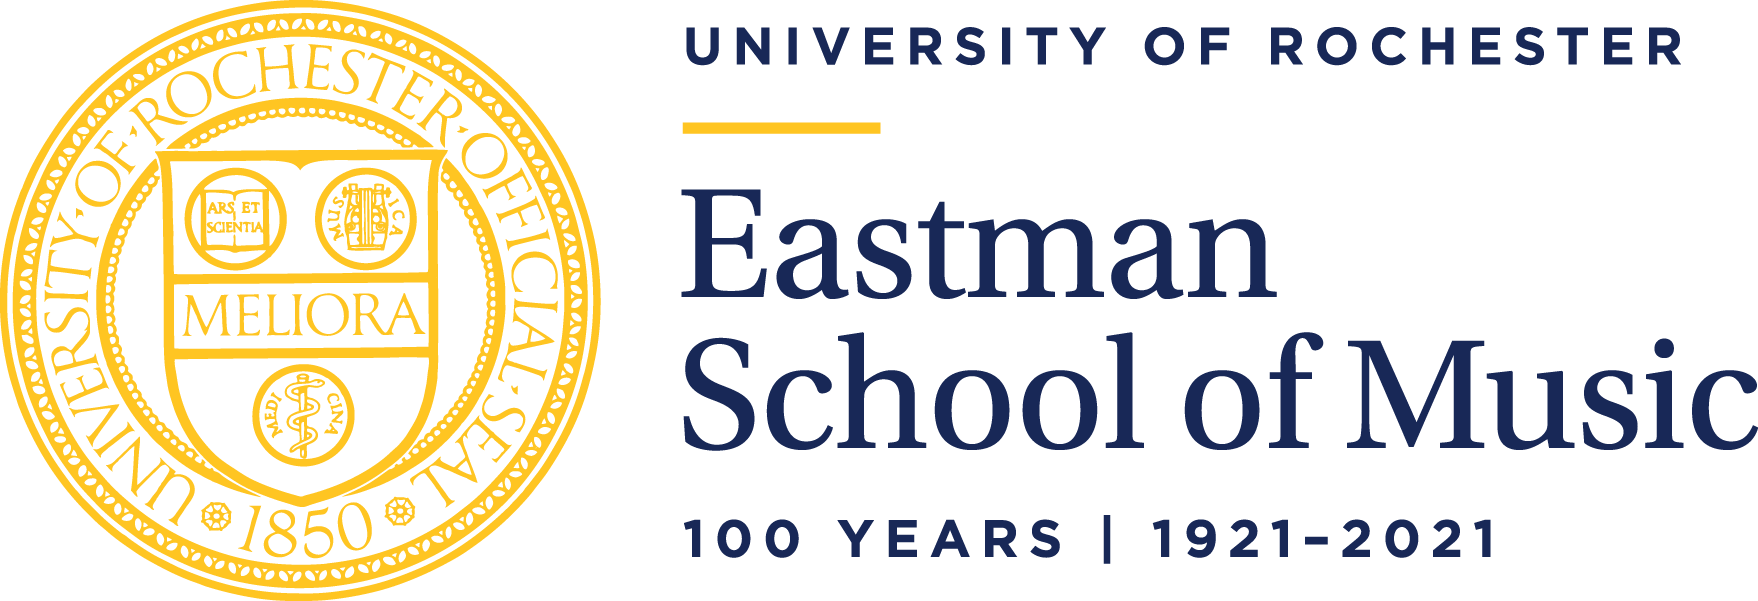 Eastman School